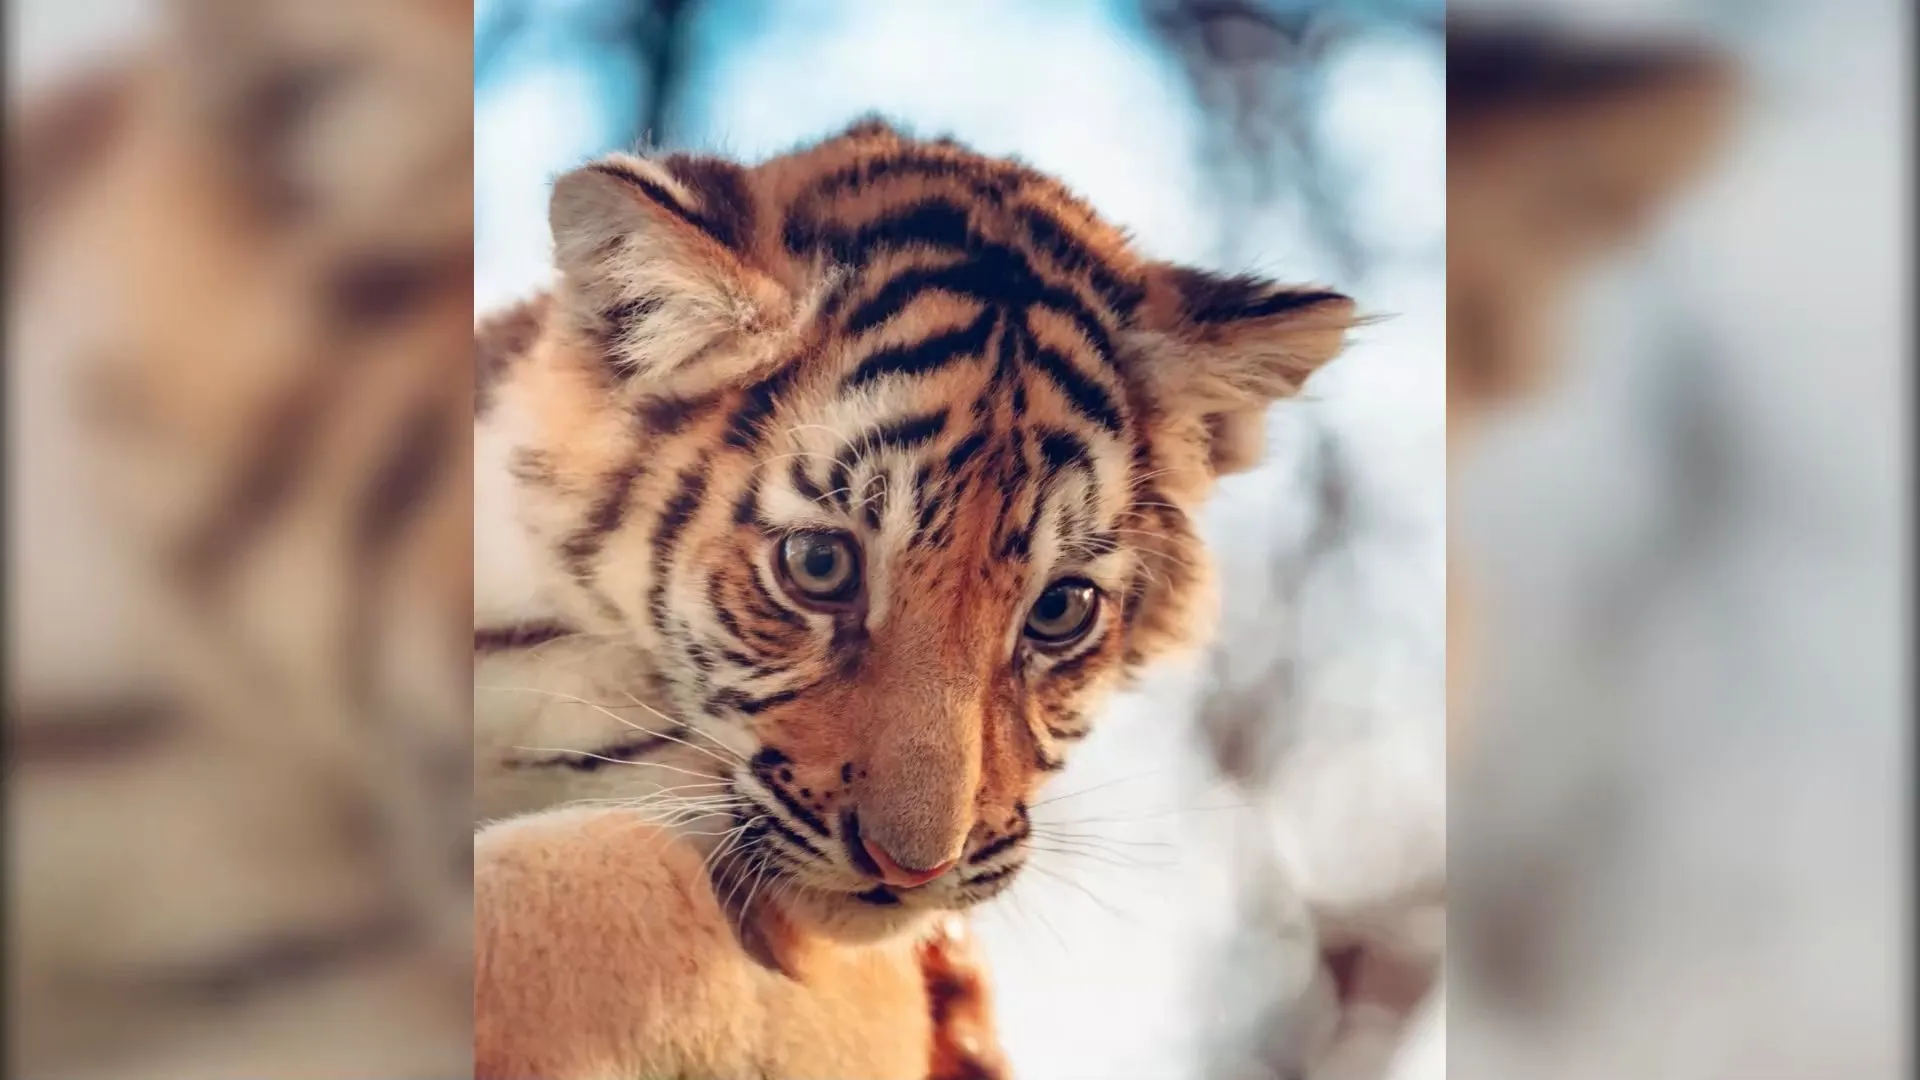 Cute tiger cubs: 